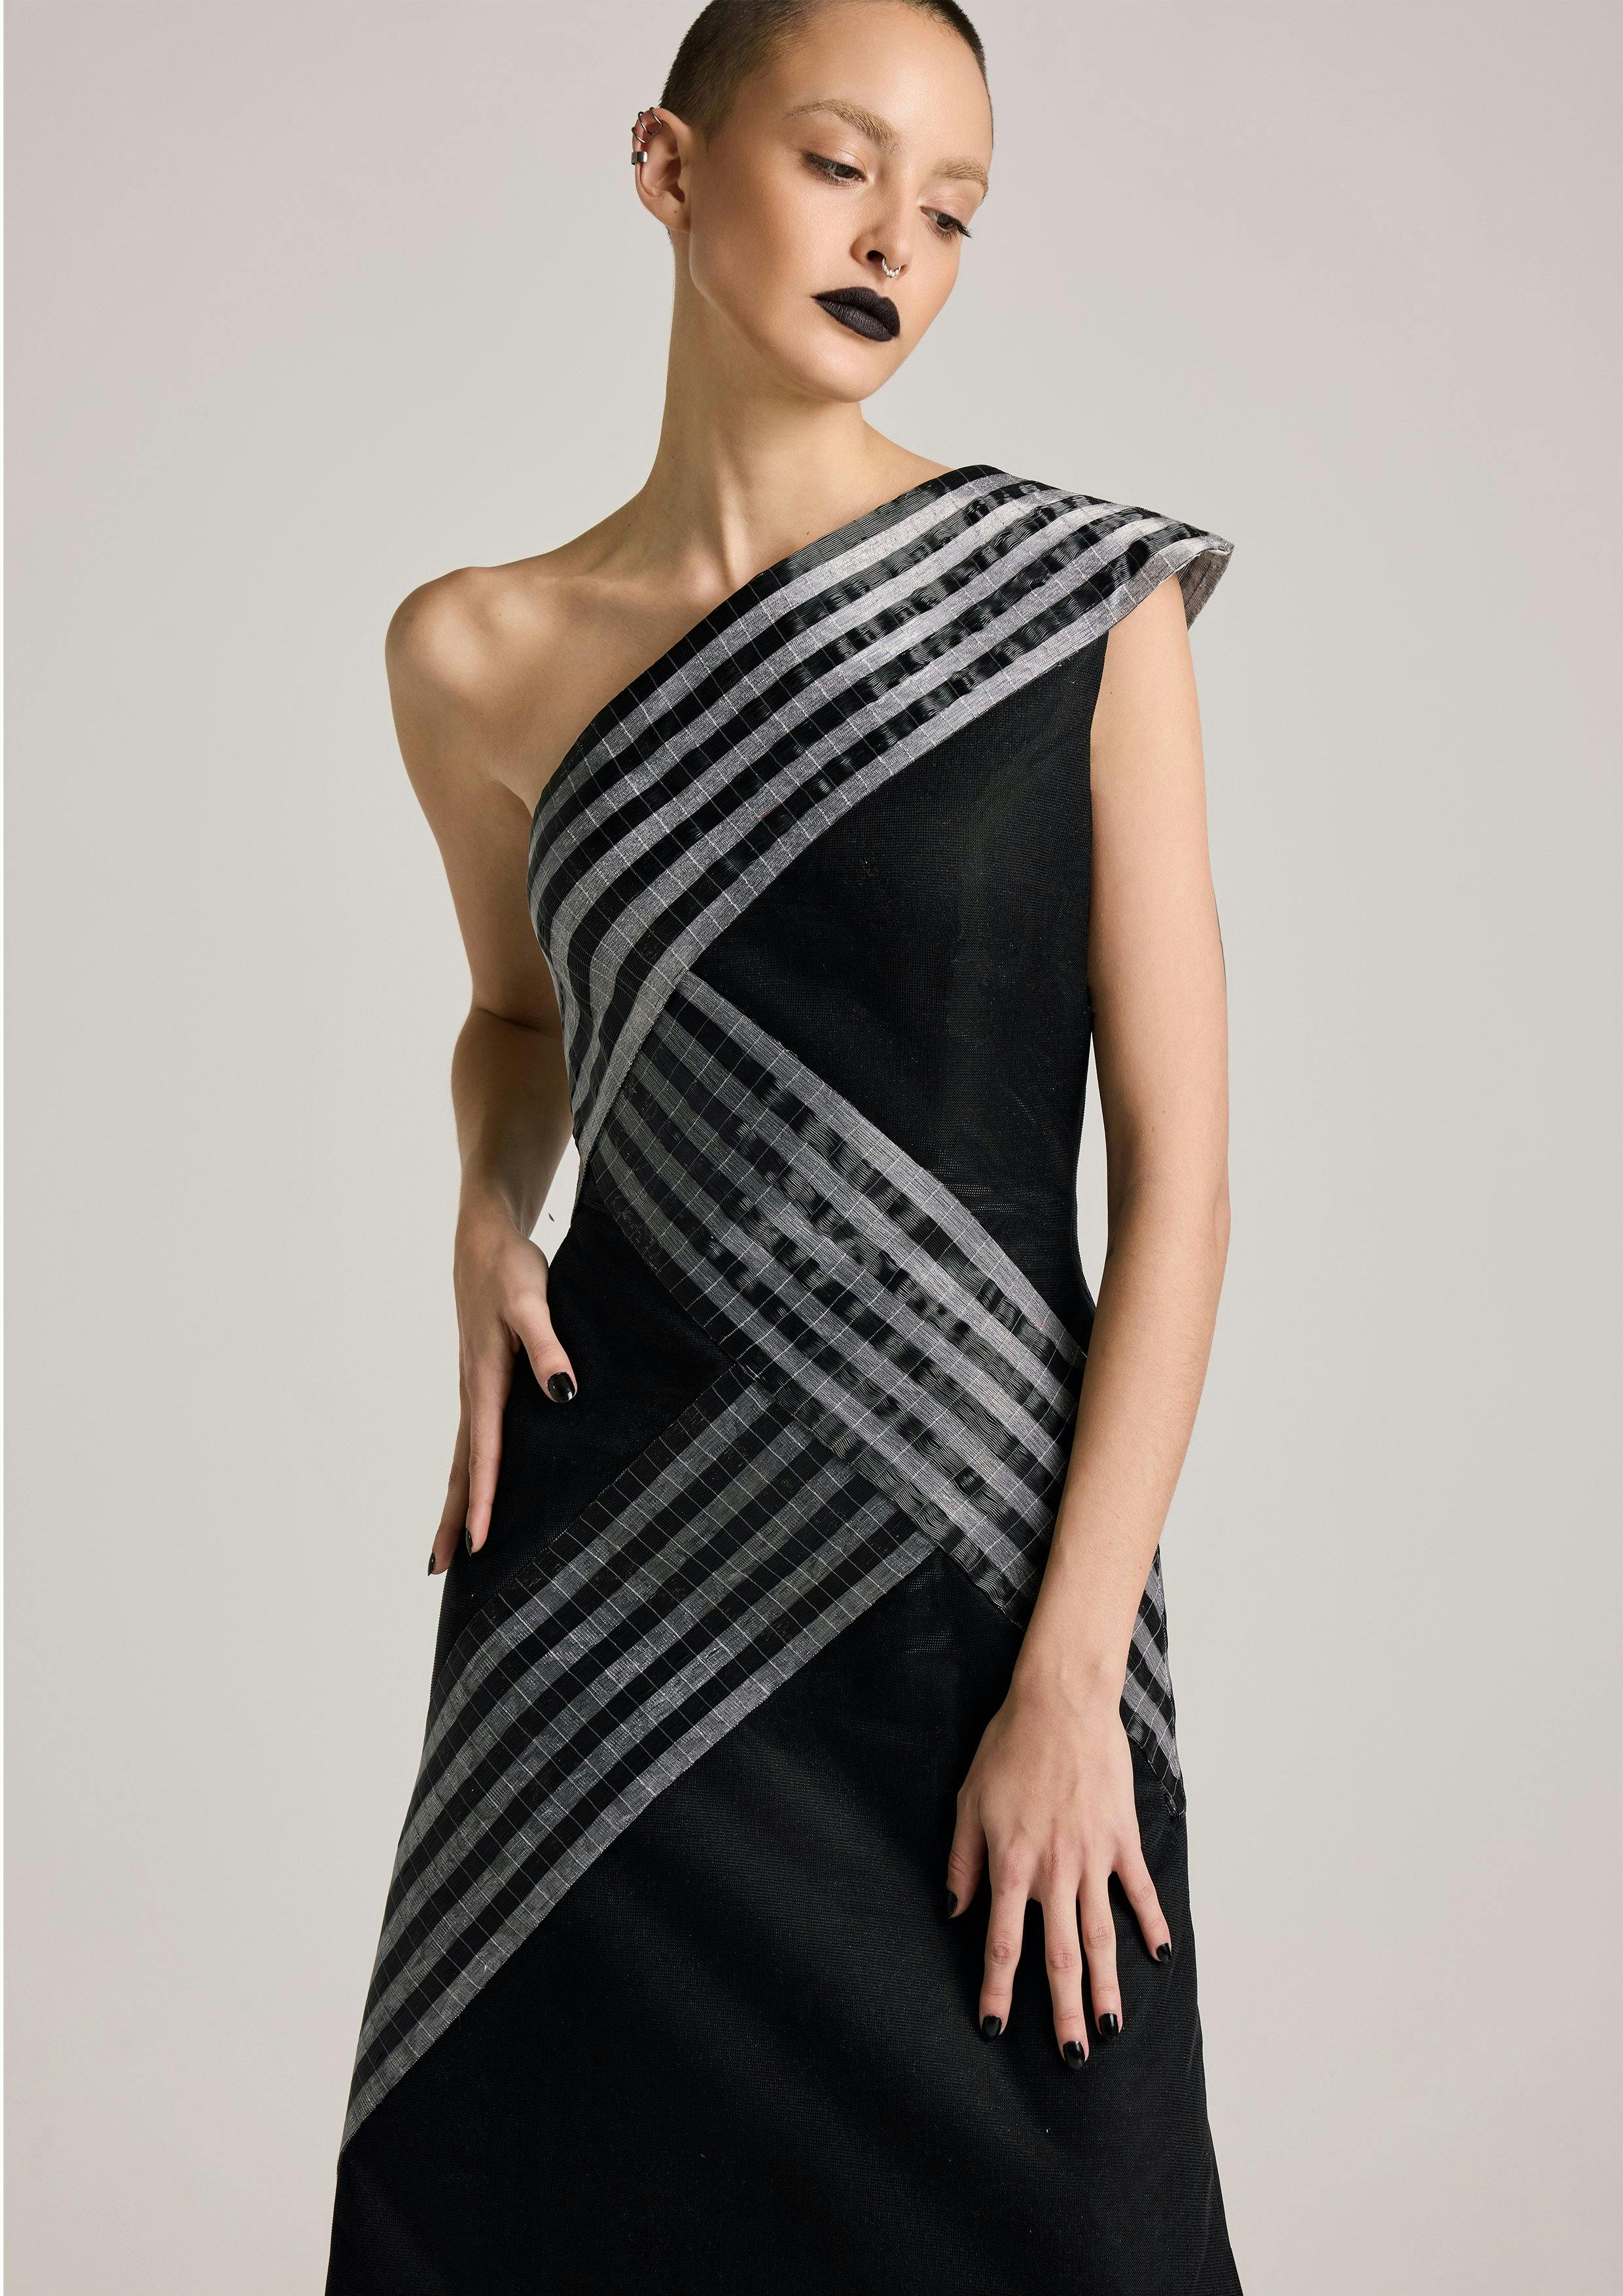 Thumbnail preview #1 for Asymmetric Glass Dress